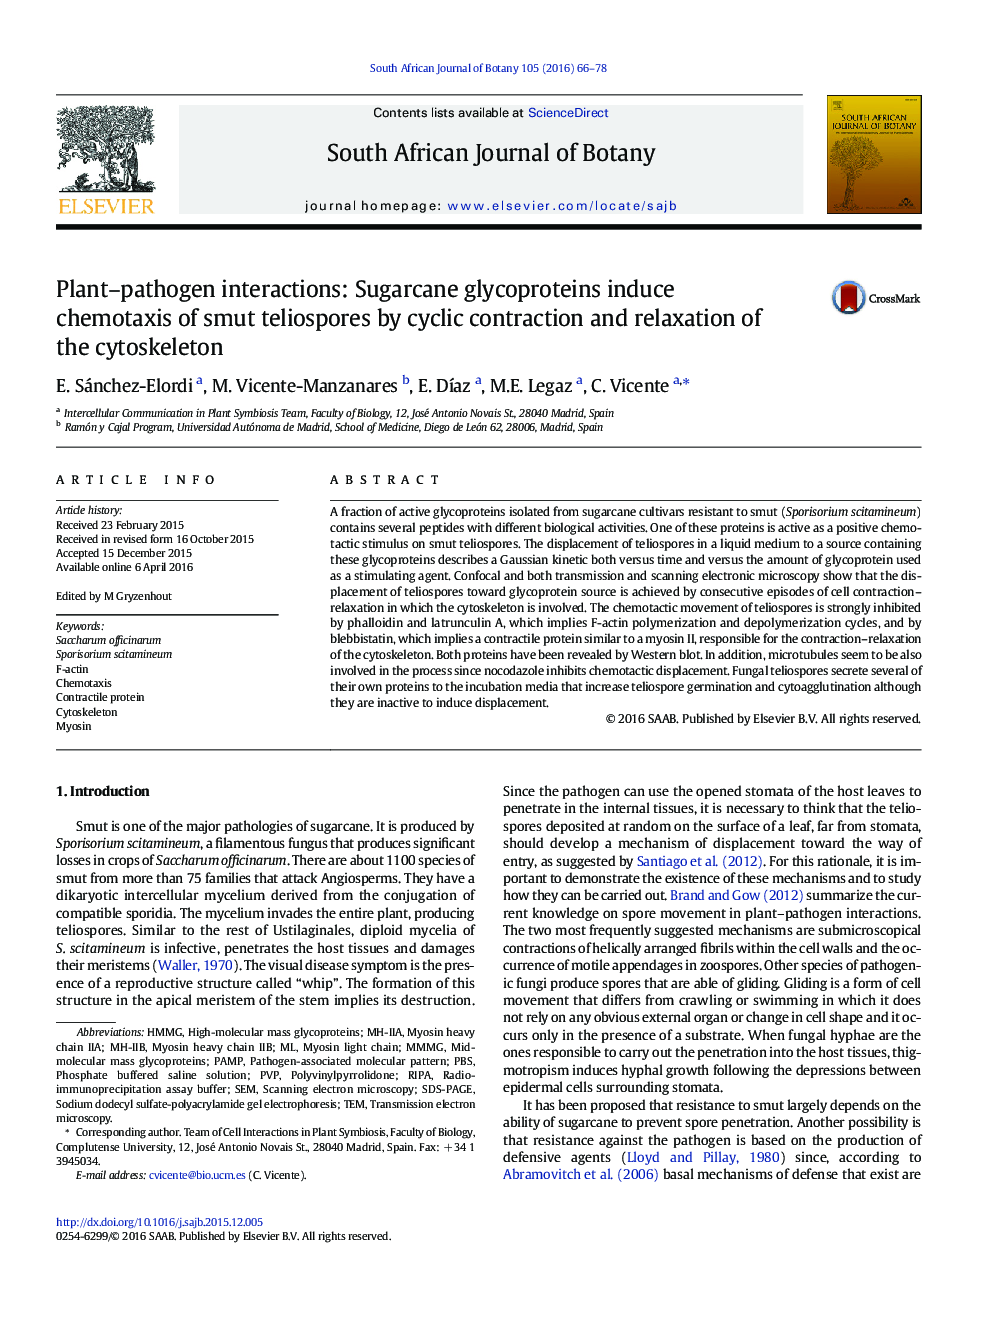 تداخلات پاتوژن های گیاهی: گلیکوپروتئین های قندی شیرین باعث تجمع شیمیایی تلویروسپورهای کوچک شده توسط انقباض سیکل و آرام سازی سیتو اسکلت 